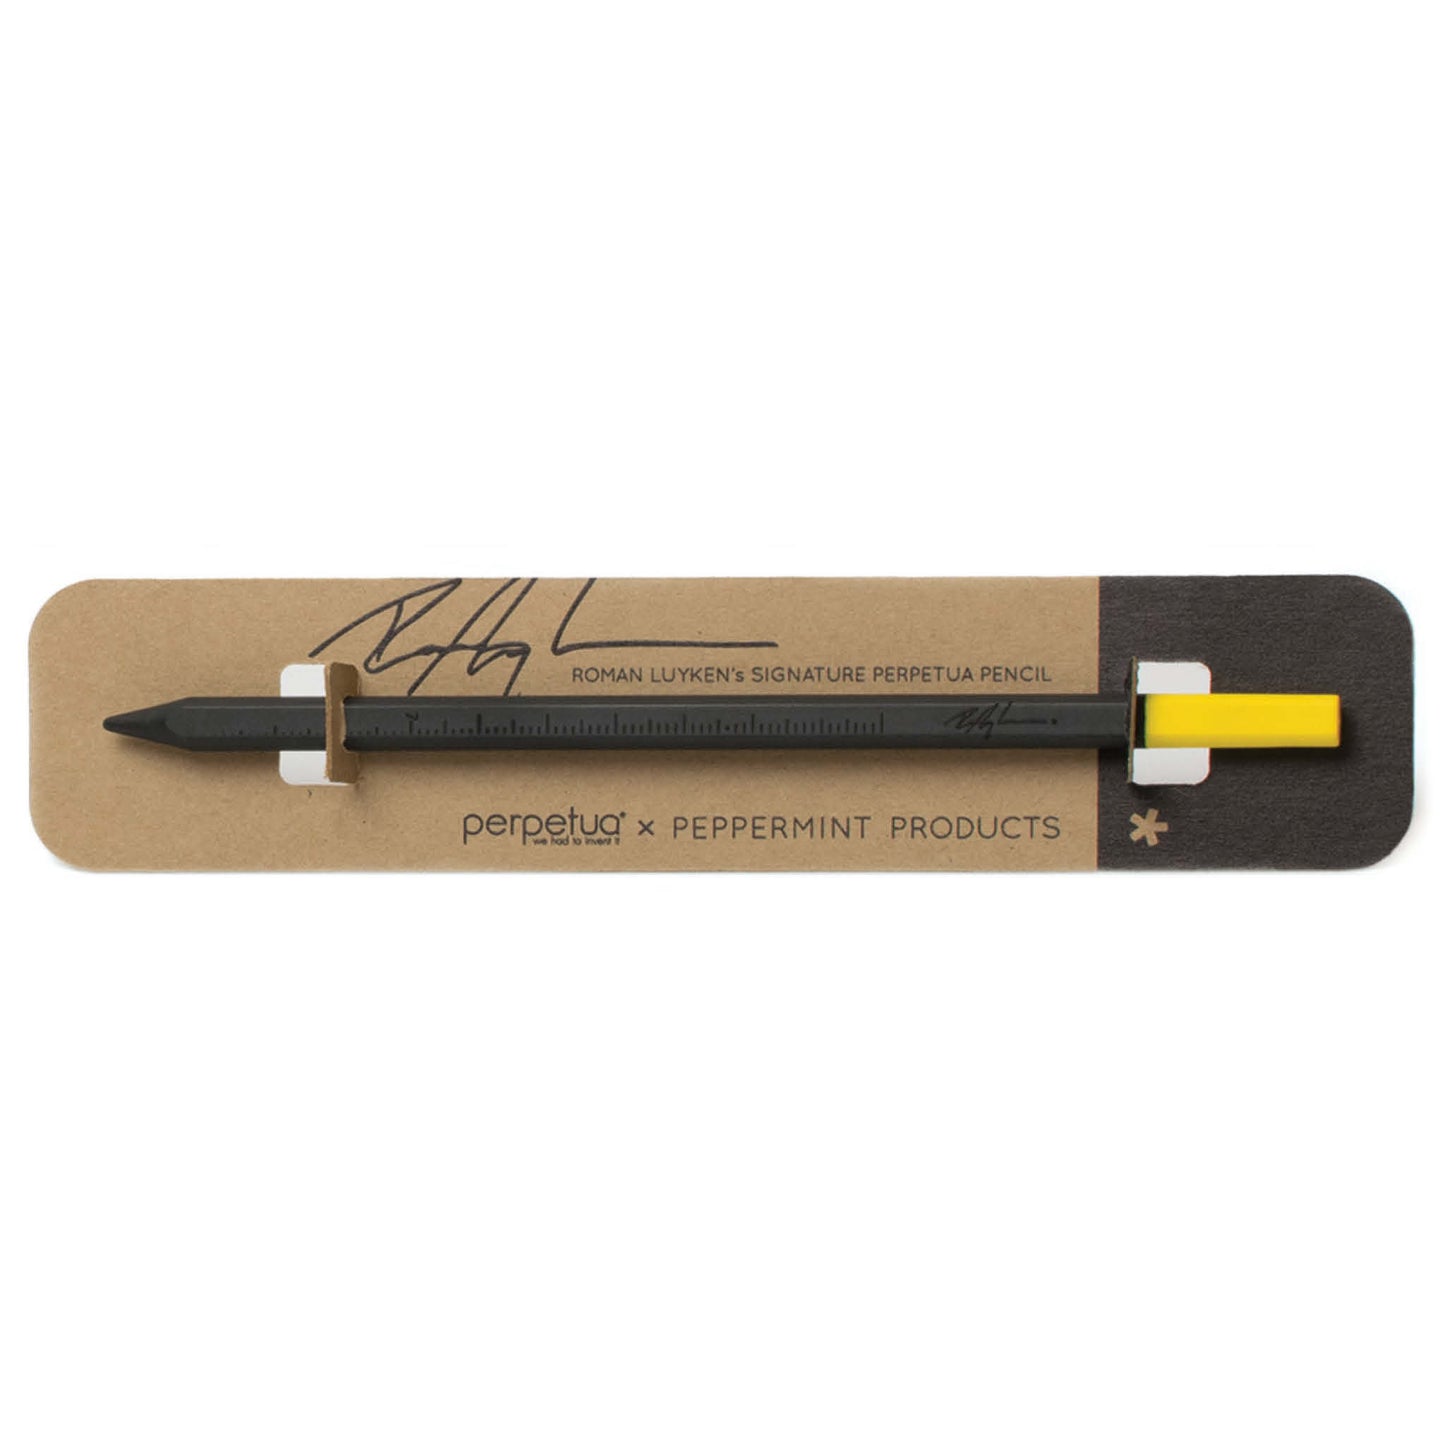 Signature Perpetua Pencil